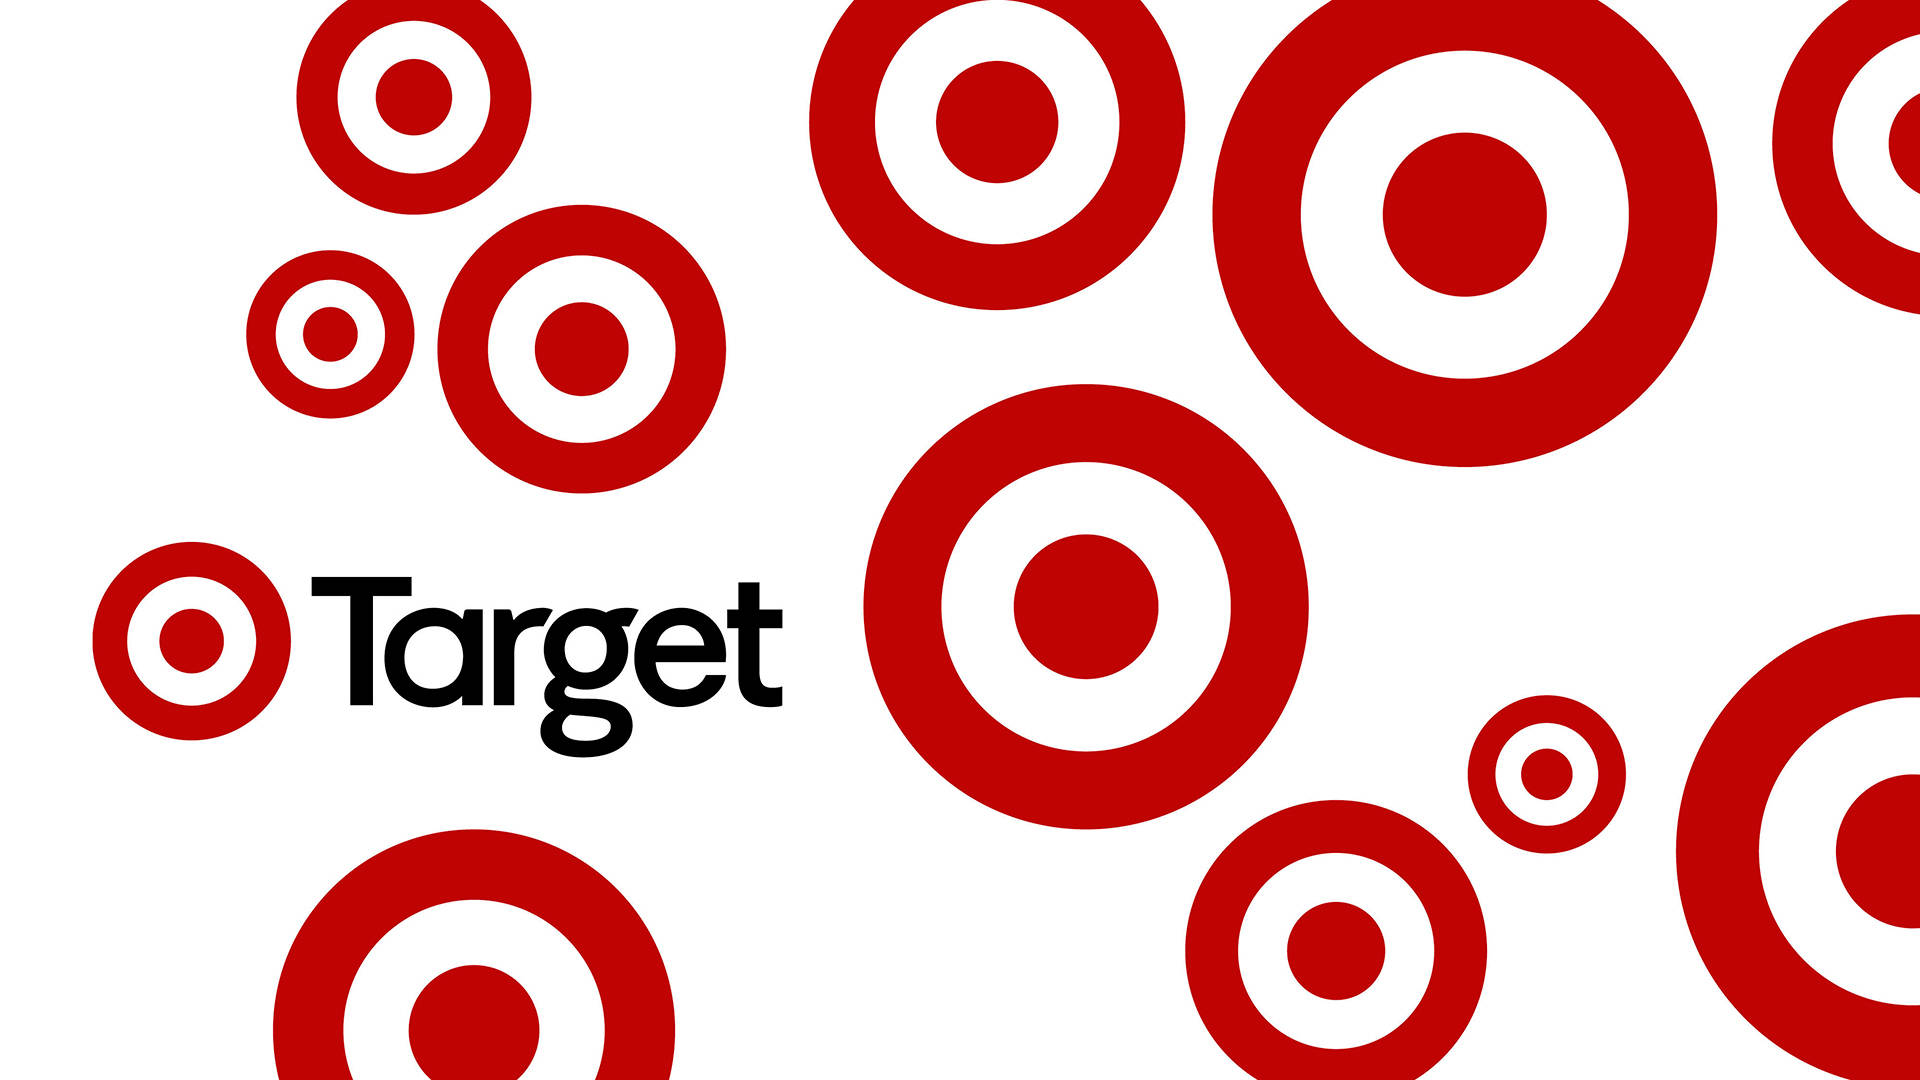 Target Retail Brand Poster